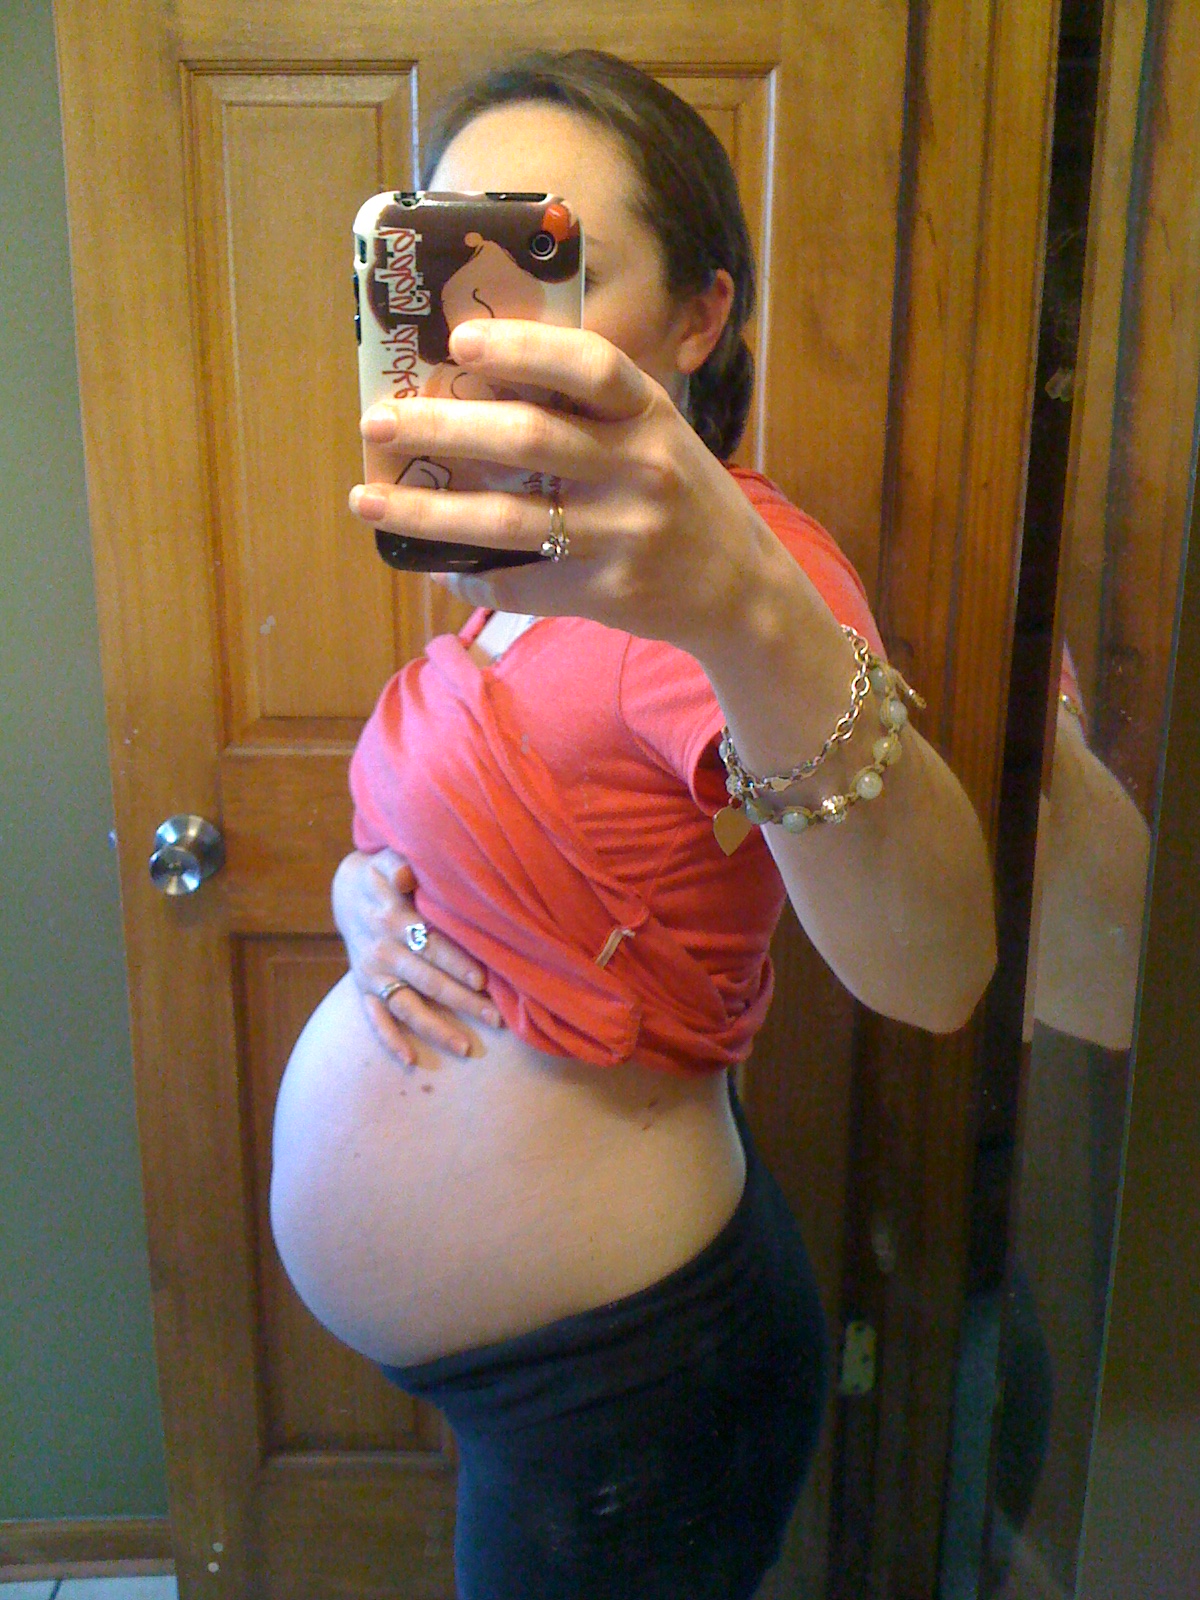 32 недели беременности сильно